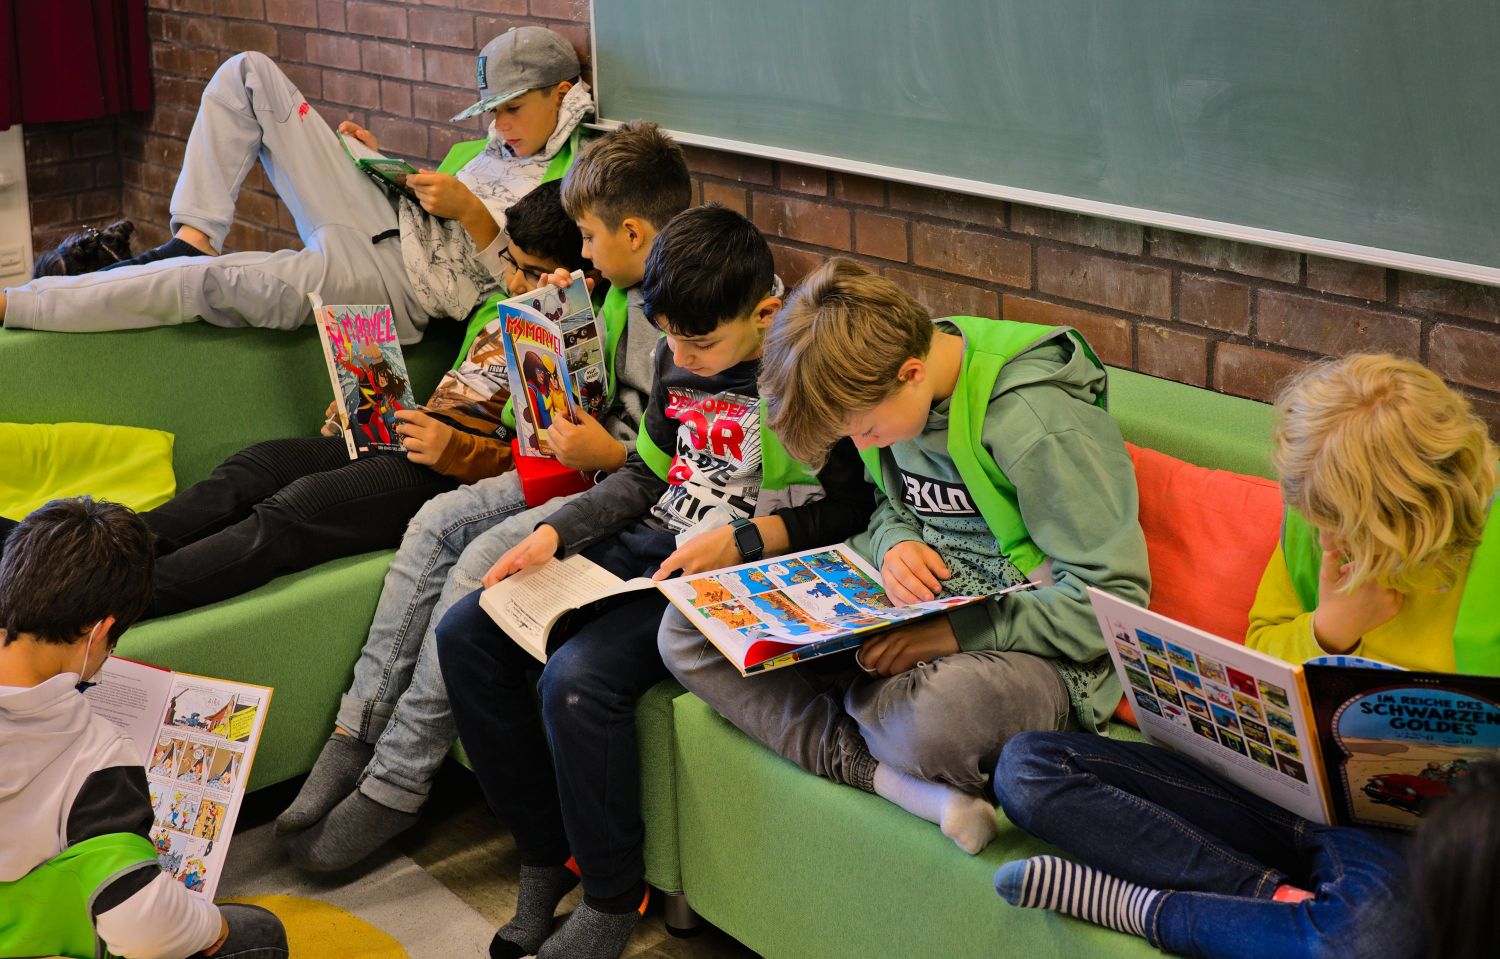 Kinder sitzen auf einem grünen Sofa und lesen in Büchern.